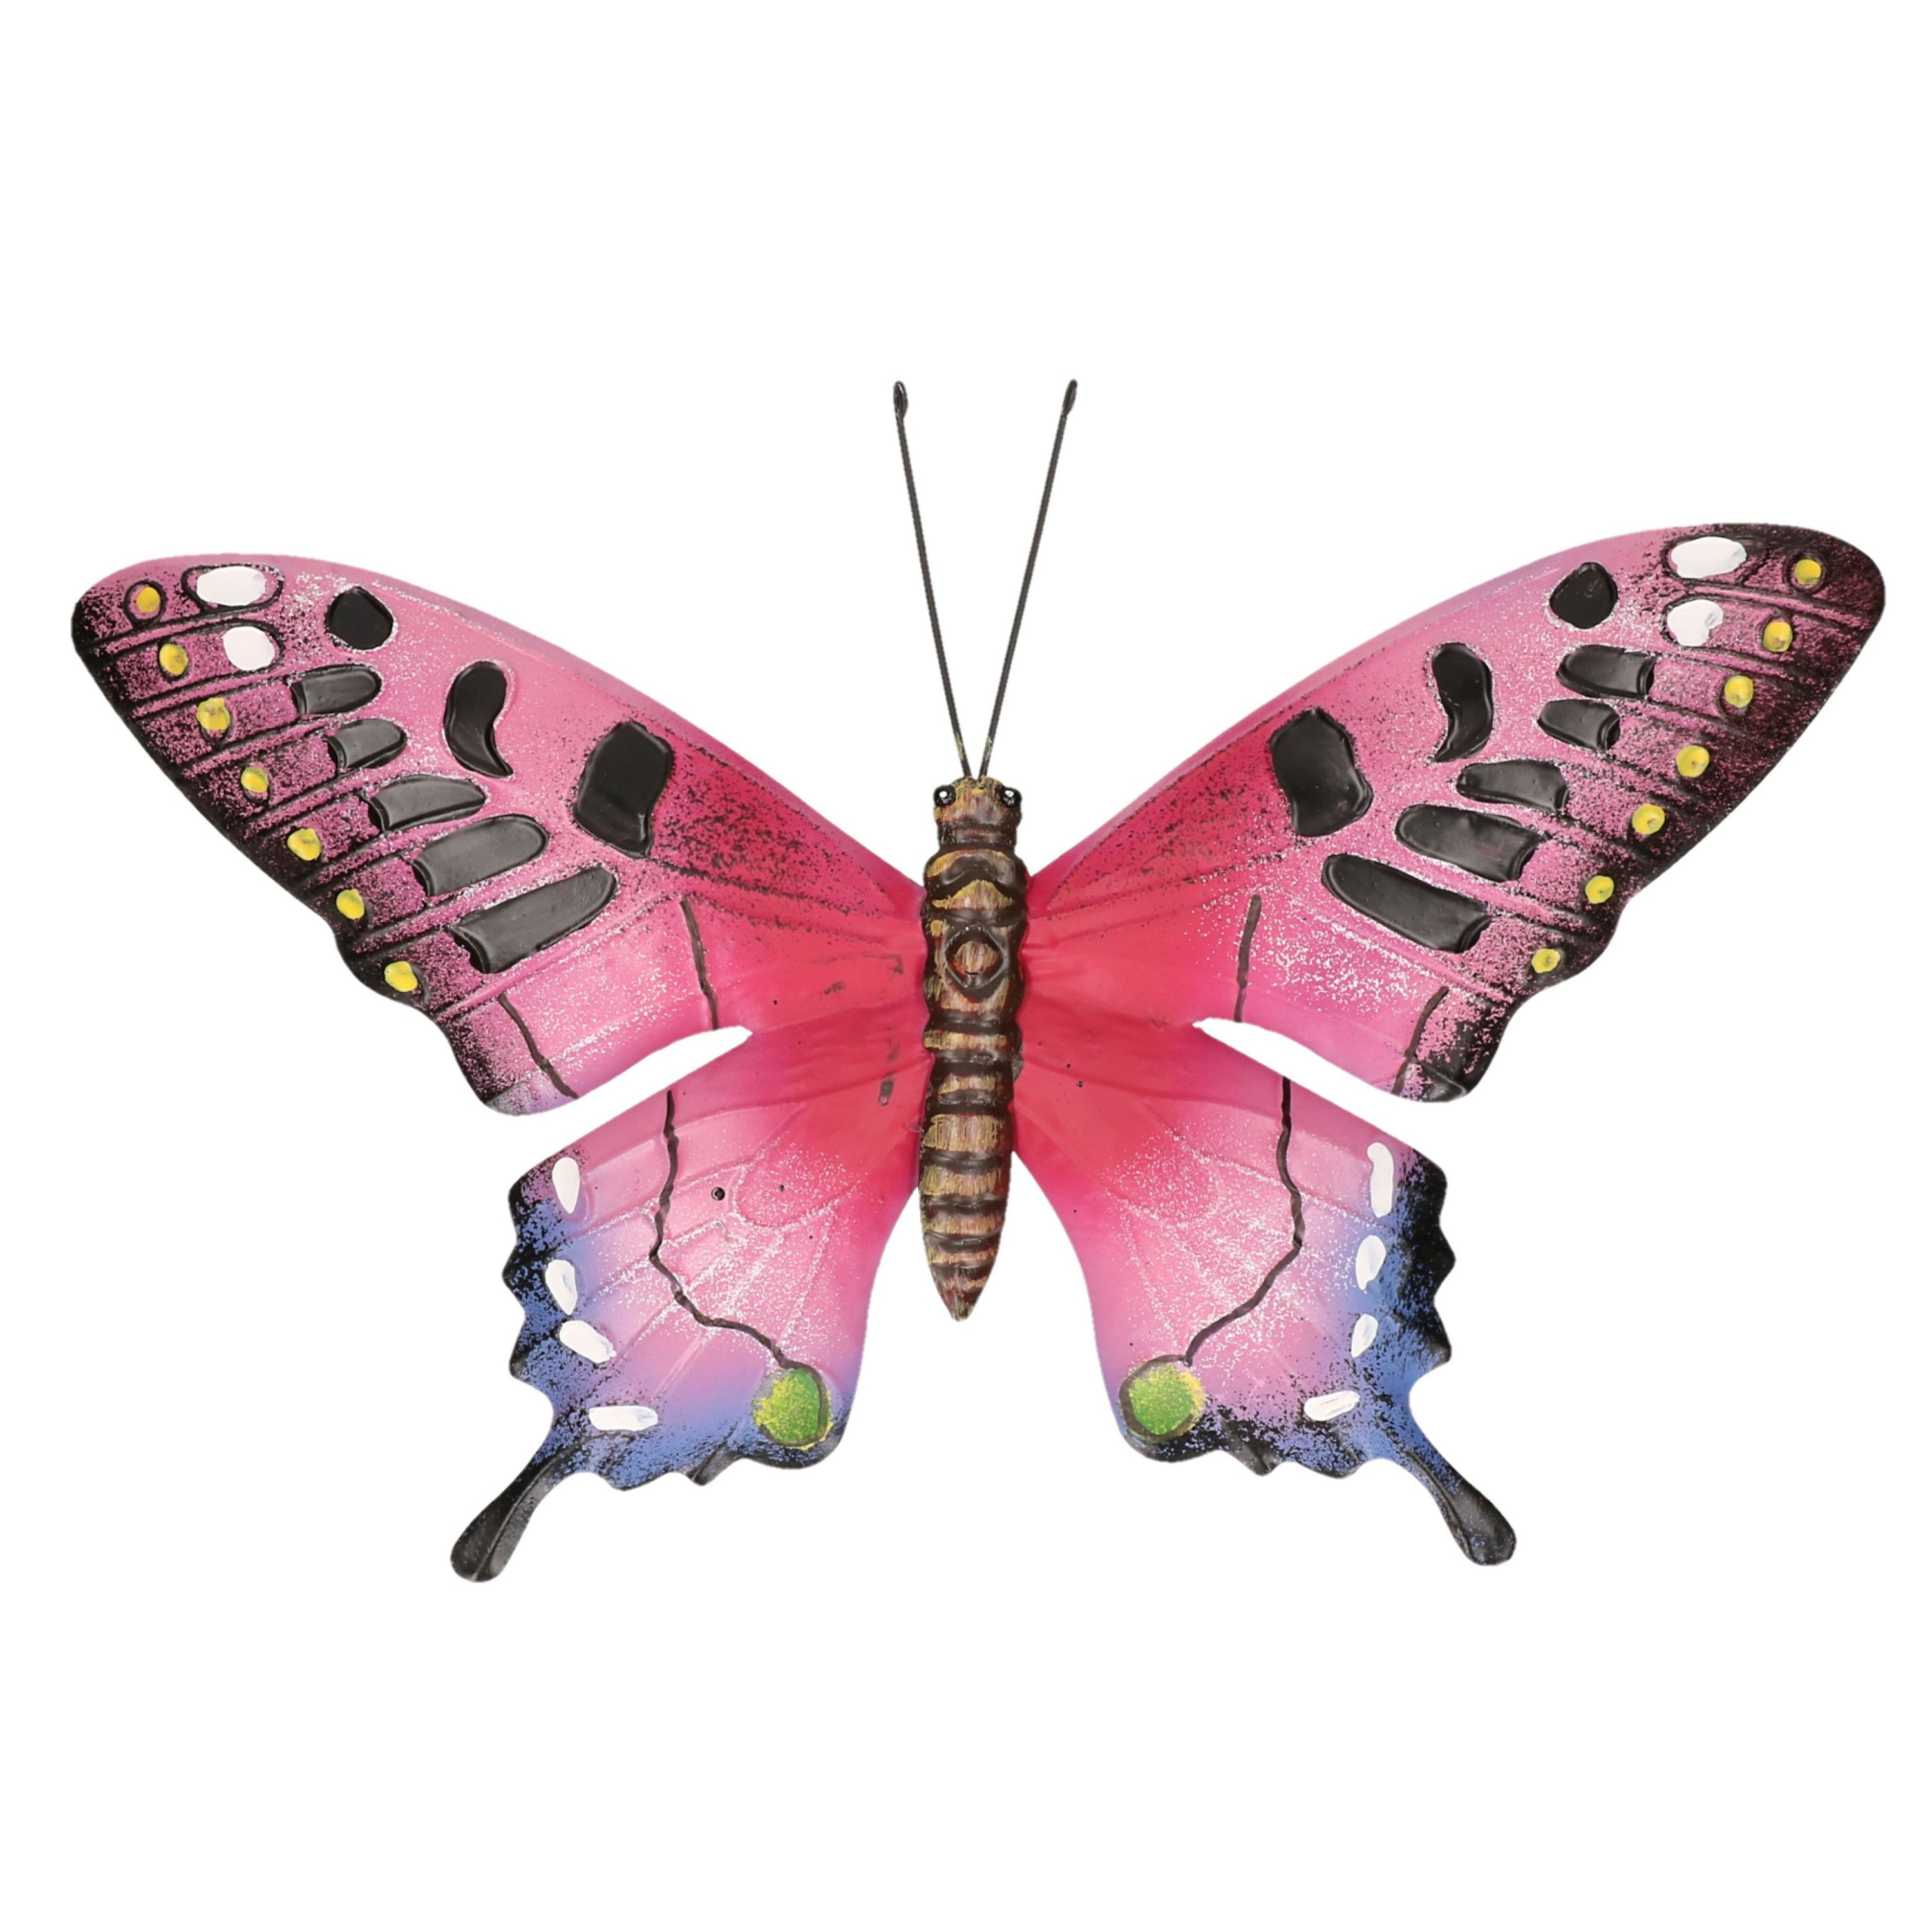 Tuindecoratie vlinder van metaal roze-zwart 37 cm